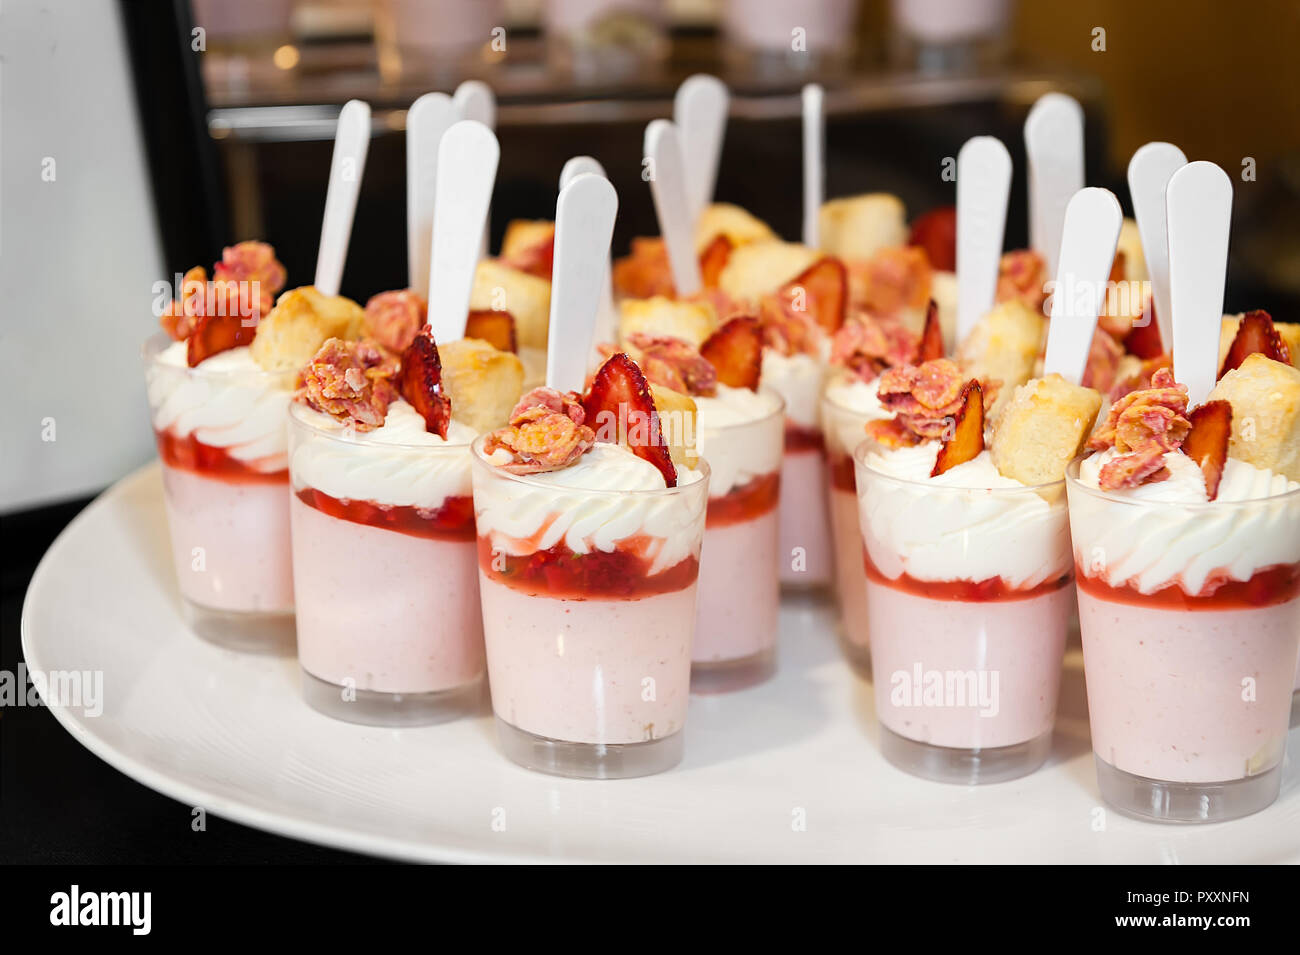 Ein Fach von Strawberry Parfait Desserts bereit, um bedient zu werden. Stockfoto